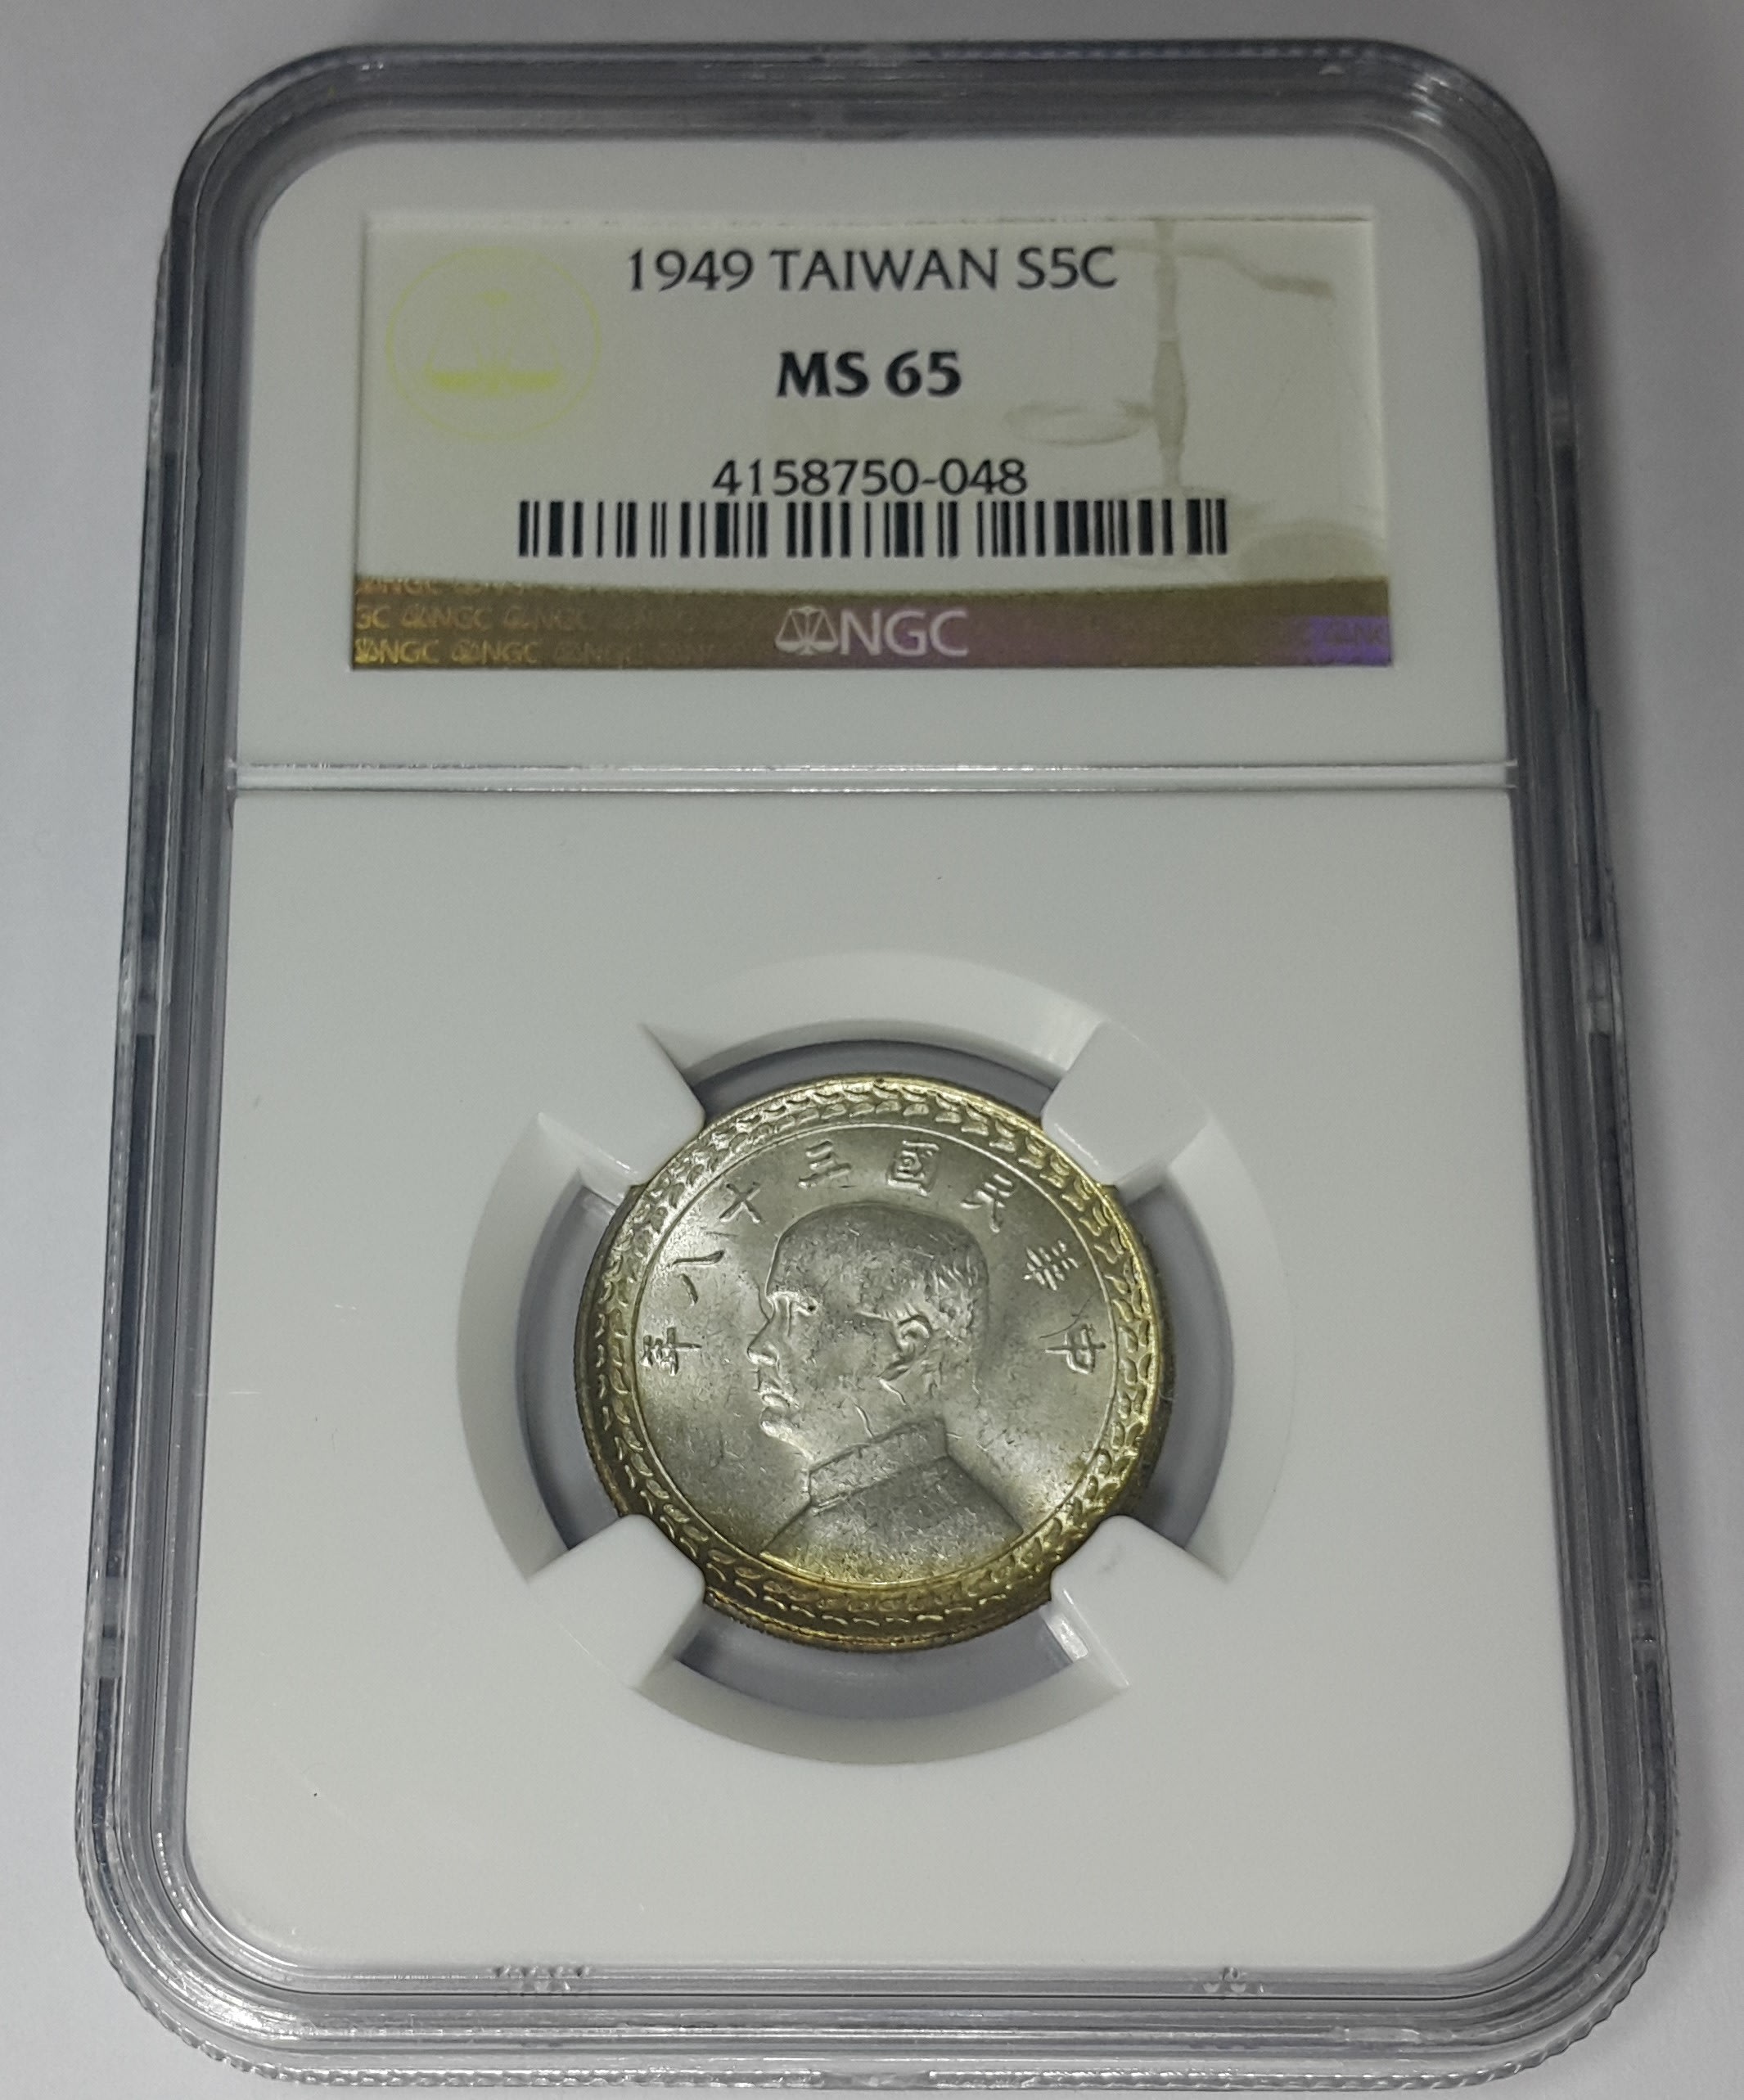 (財寶庫)0048台灣首枚錢也是唯一銀幣印台灣省民國三十八(38)年伍角【NGC鑑定MS65】請把握機會。值得典藏